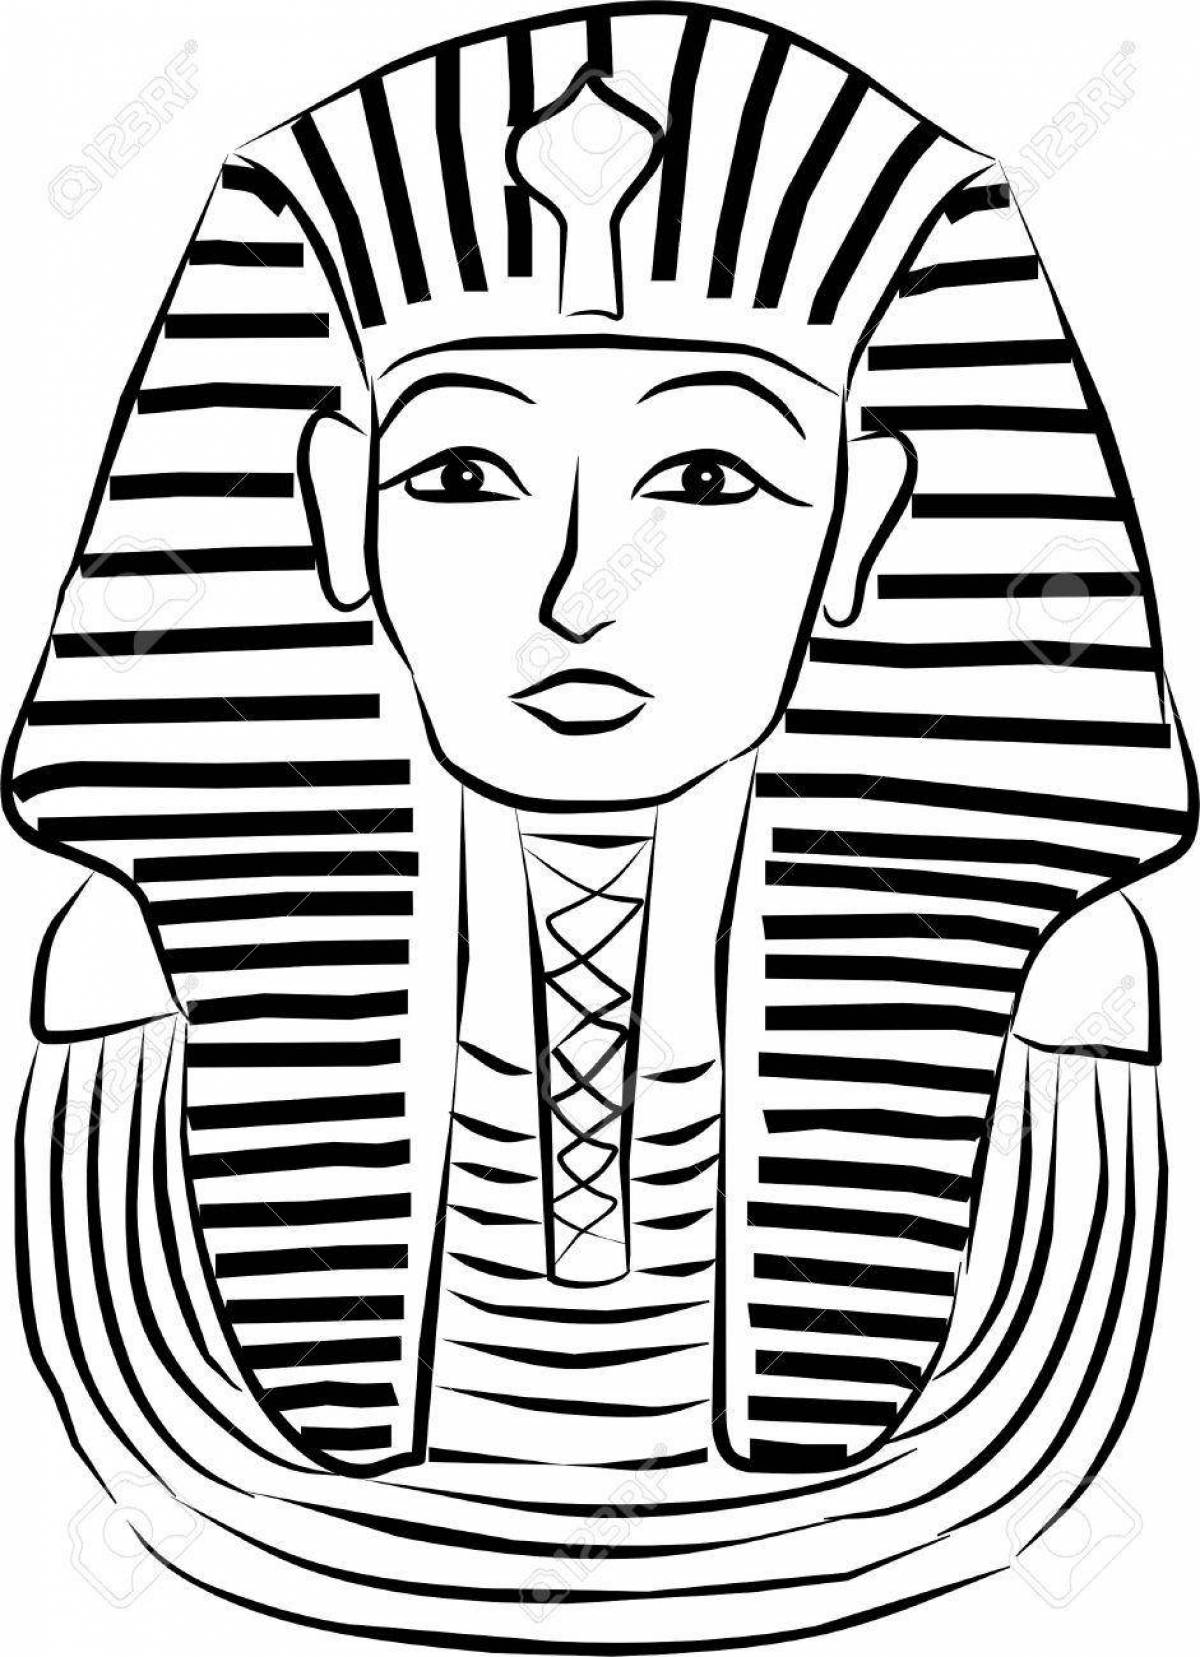 Саркофаг фараона Тутанхамона раскраска